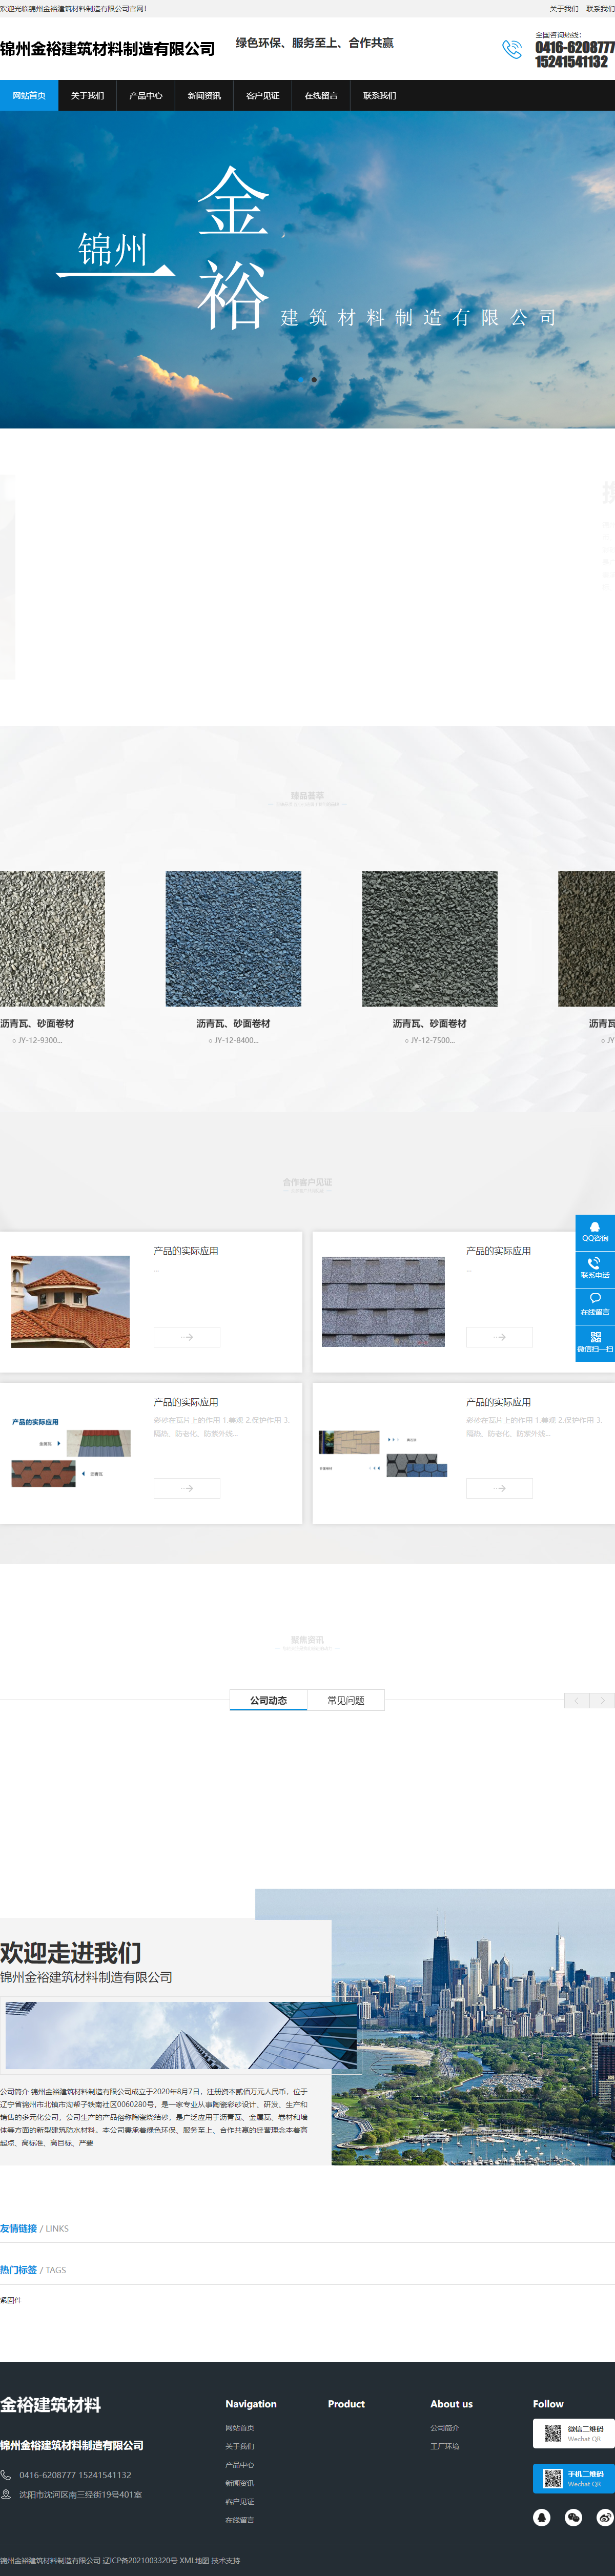 锦州金裕建筑材料制造有限公司网站案例